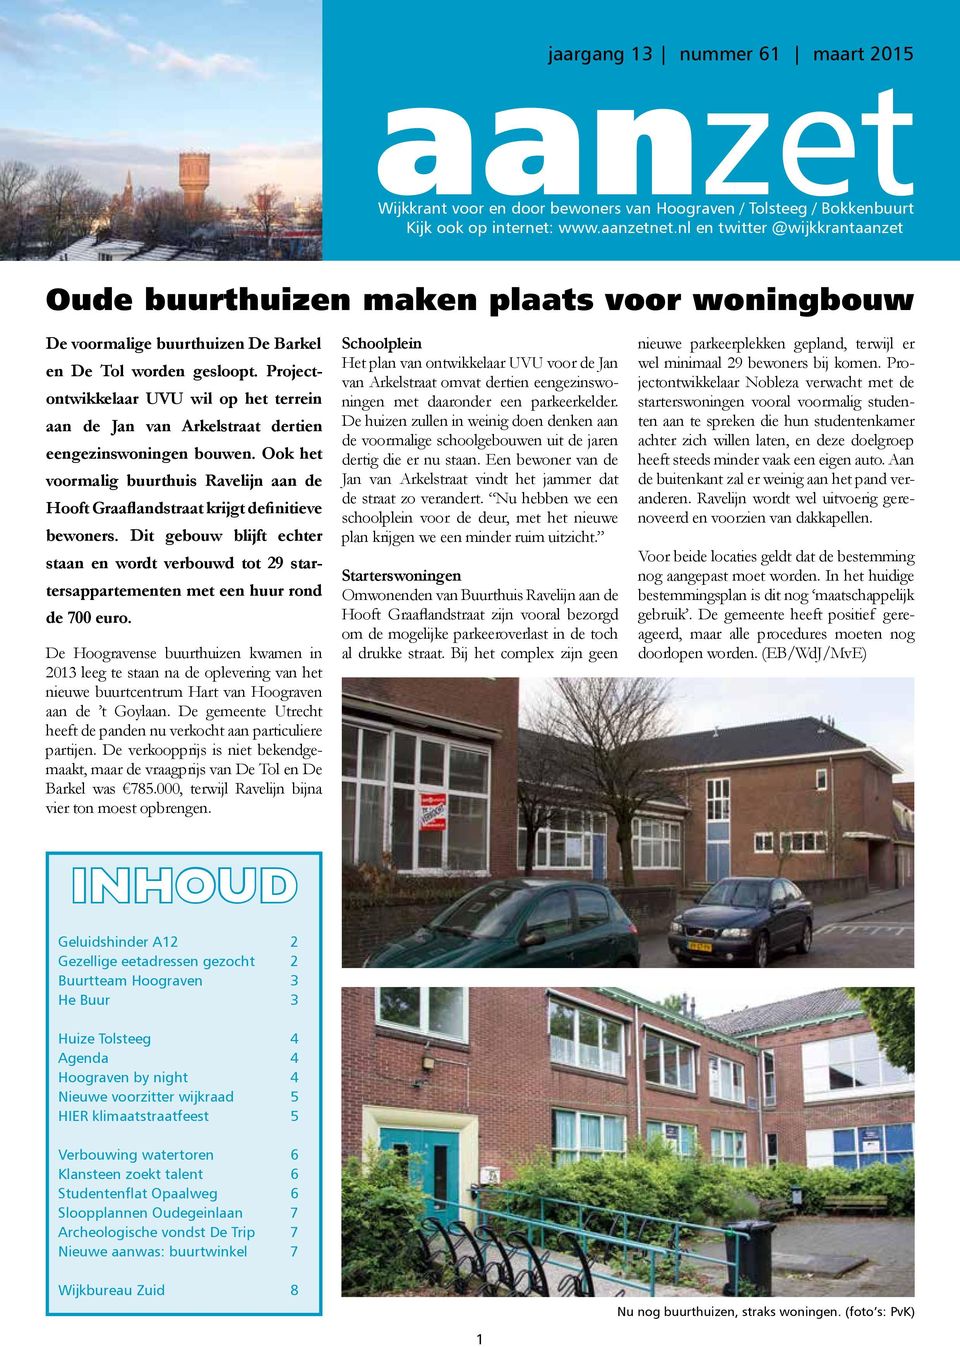 Projectontwikkelaar UVU wil op het terrein aan de Jan van Arkelstraat dertien eengezinswoningen bouwen. Ook het voormalig buurthuis Ravelijn aan de Hooft Graaflandstraat krijgt definitieve bewoners.